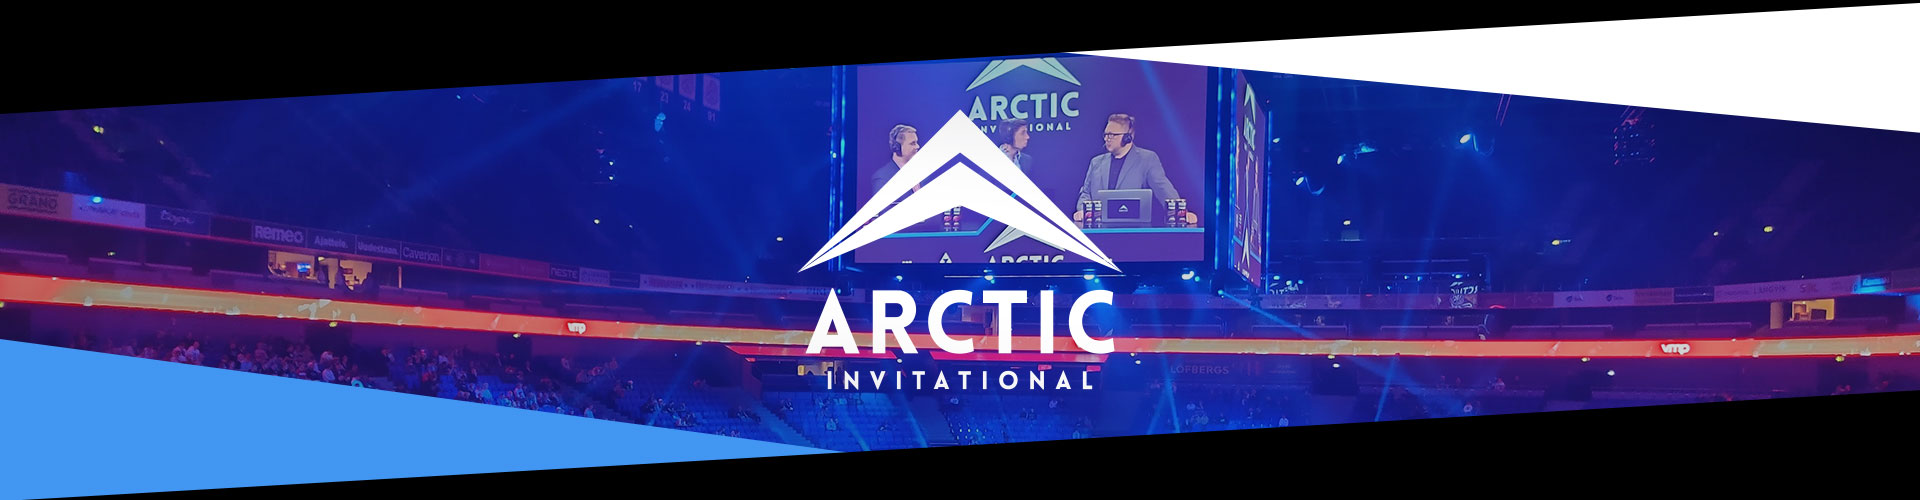 “I mitt tycke gjorde Arctic Invitational ett gott jobb för att vara första gången de anordnade”